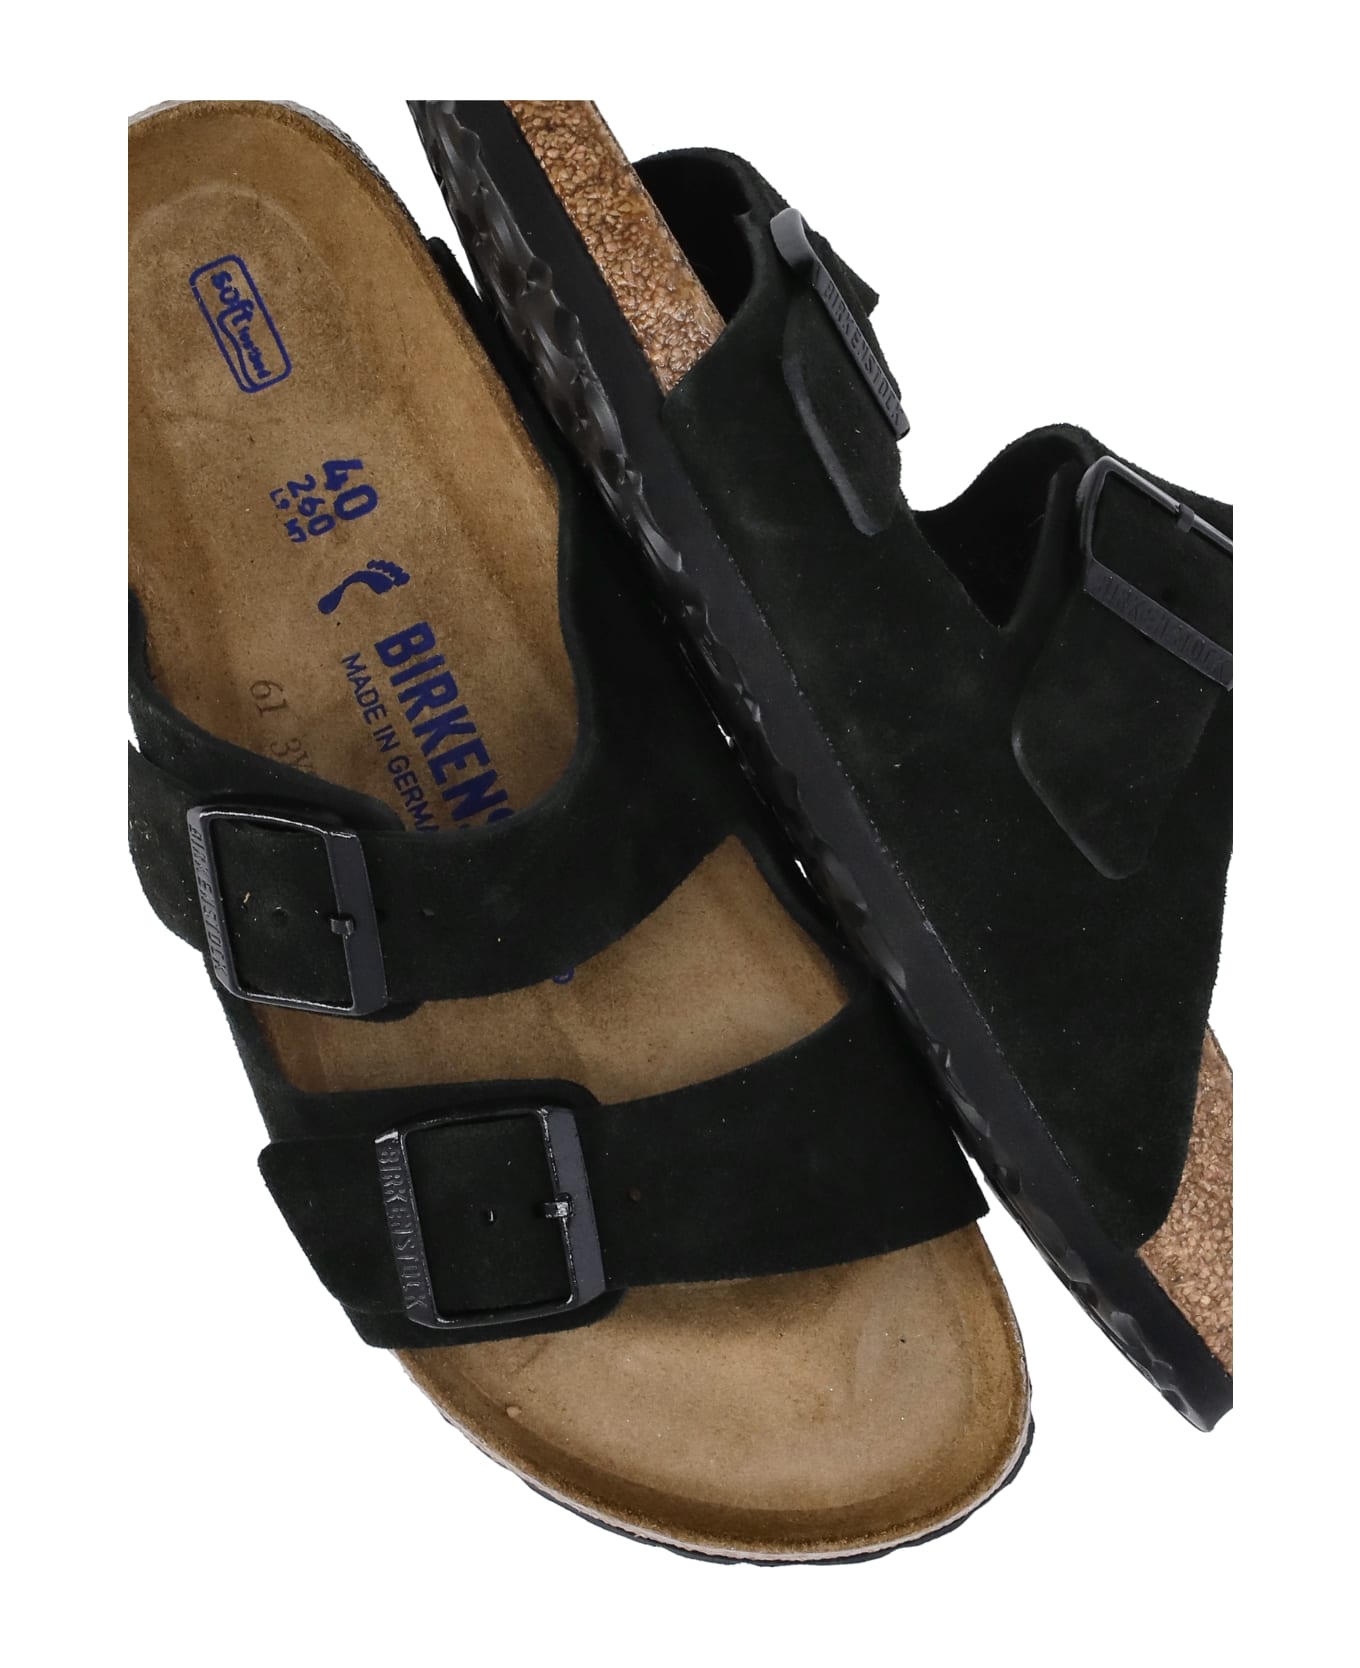 Birkenstock Arizona Sandals - Black フラットシューズ